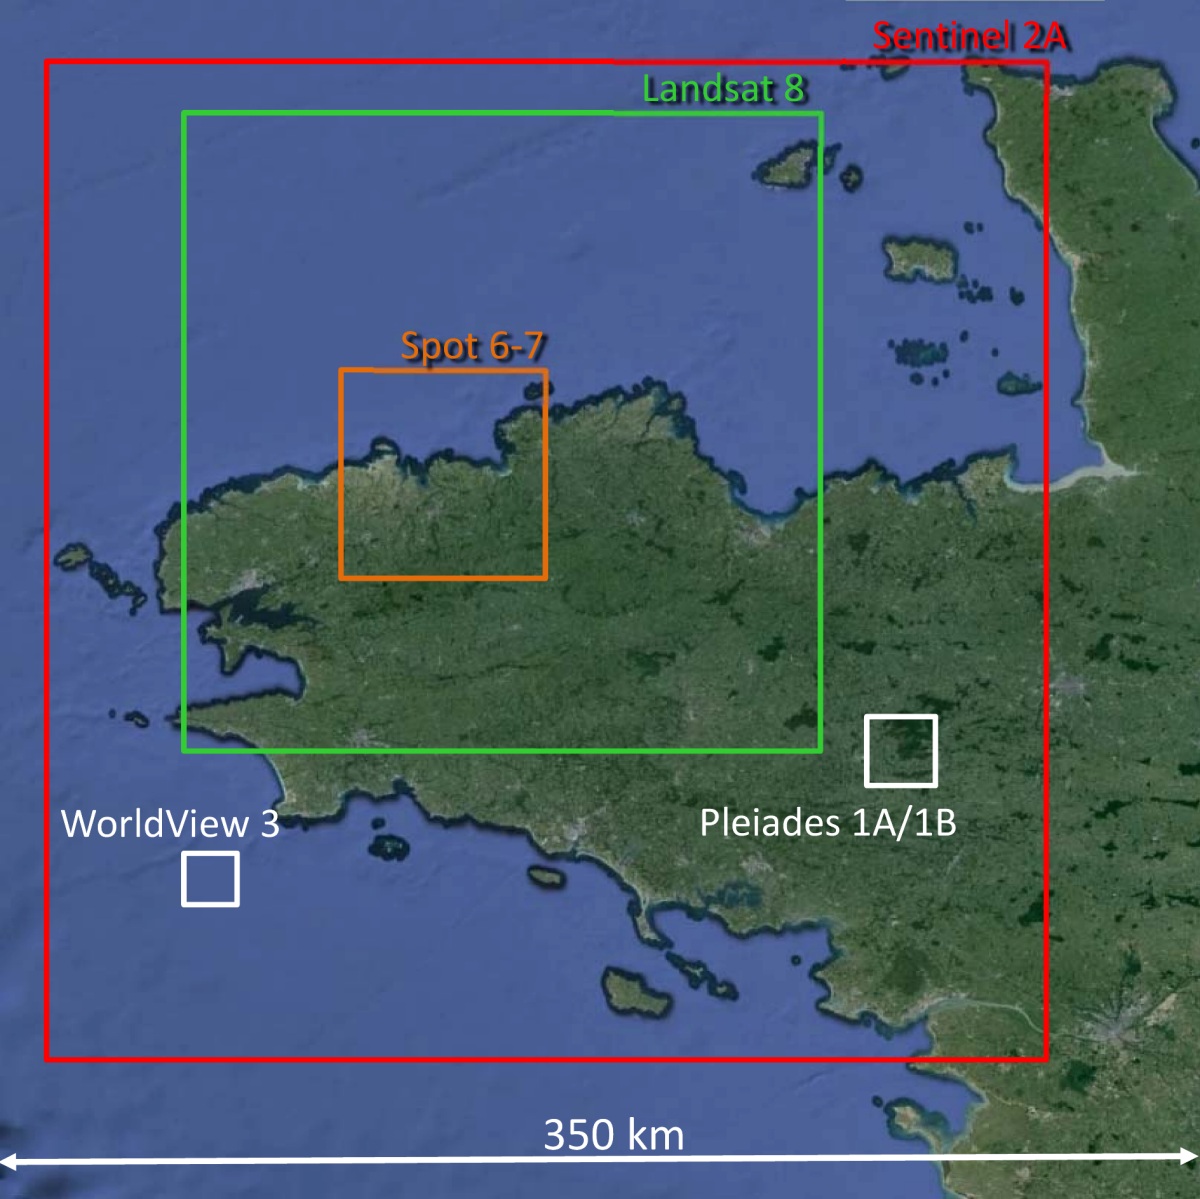 Satellite d'observation - Fauchée - Swath - Résolution - GSD - Ground Sampling Distance - SPOT - Pléiades - Sentinel-2 - Landsat 8 - WorldView-2 - WorldView-3